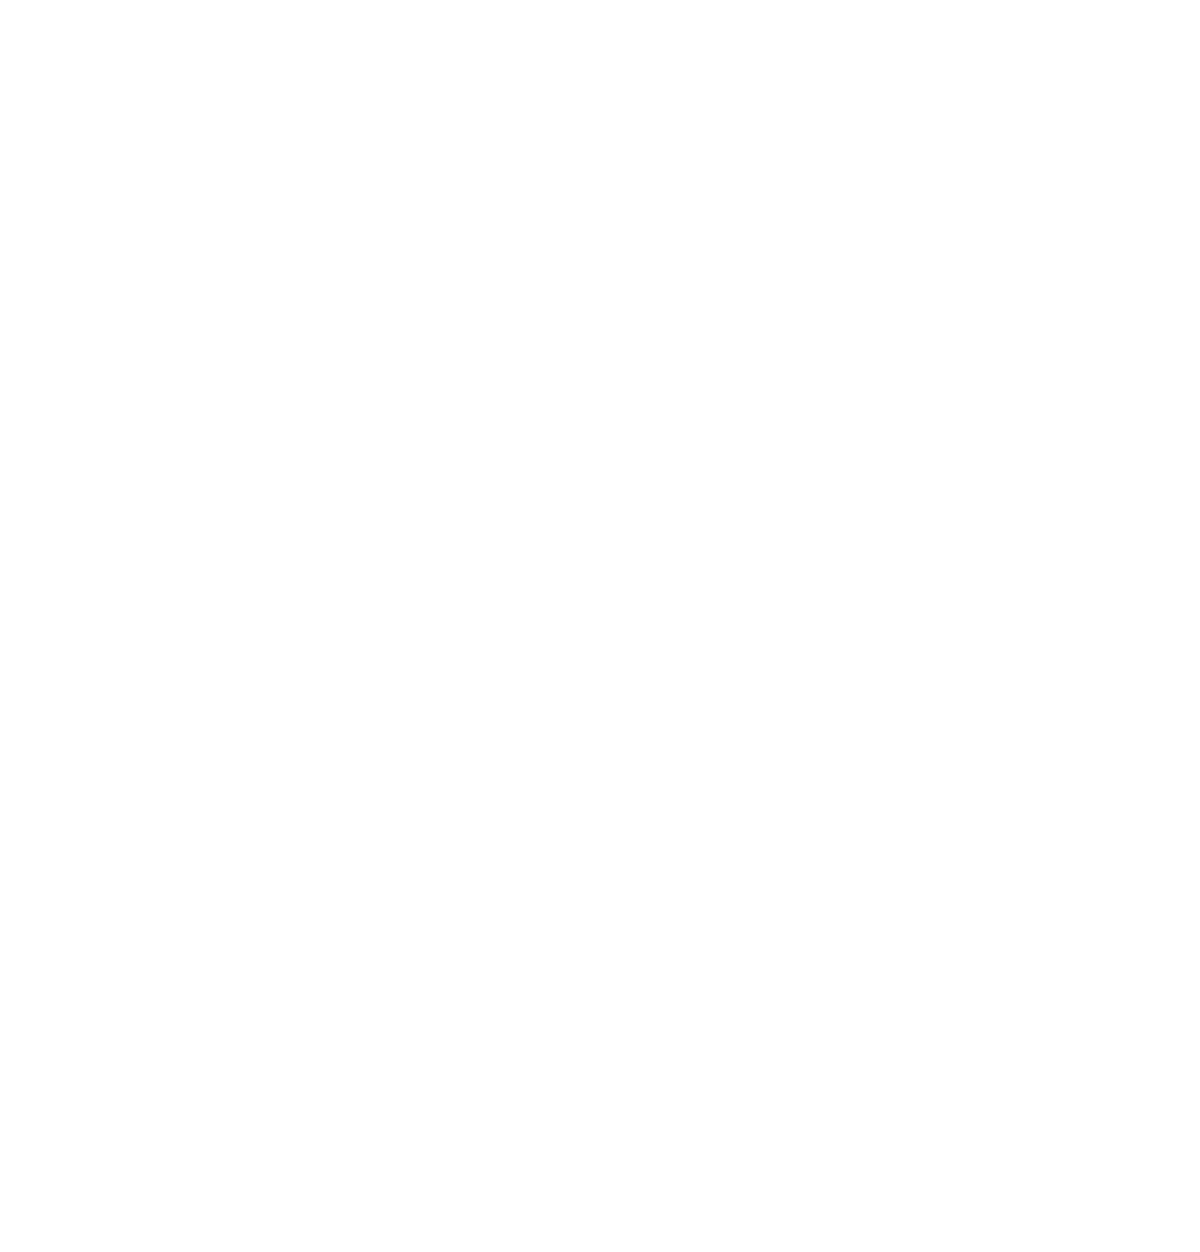 Logo Relais & Châteaux